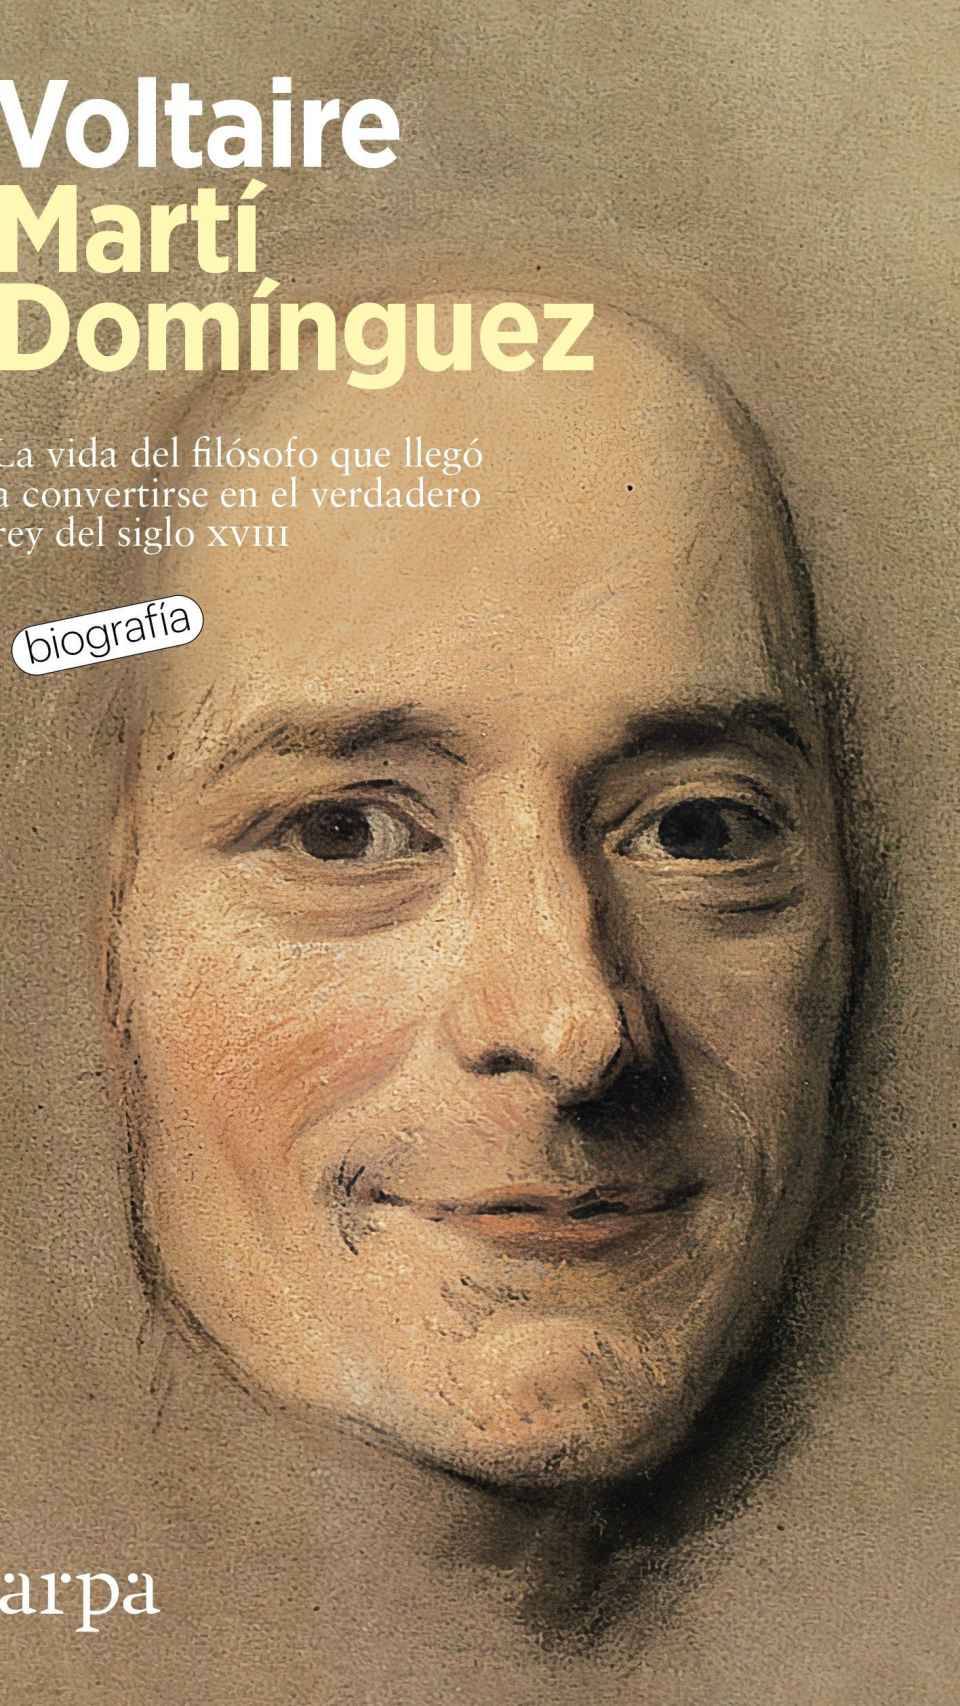 La biografía de Voltaire de Martí Domínguez